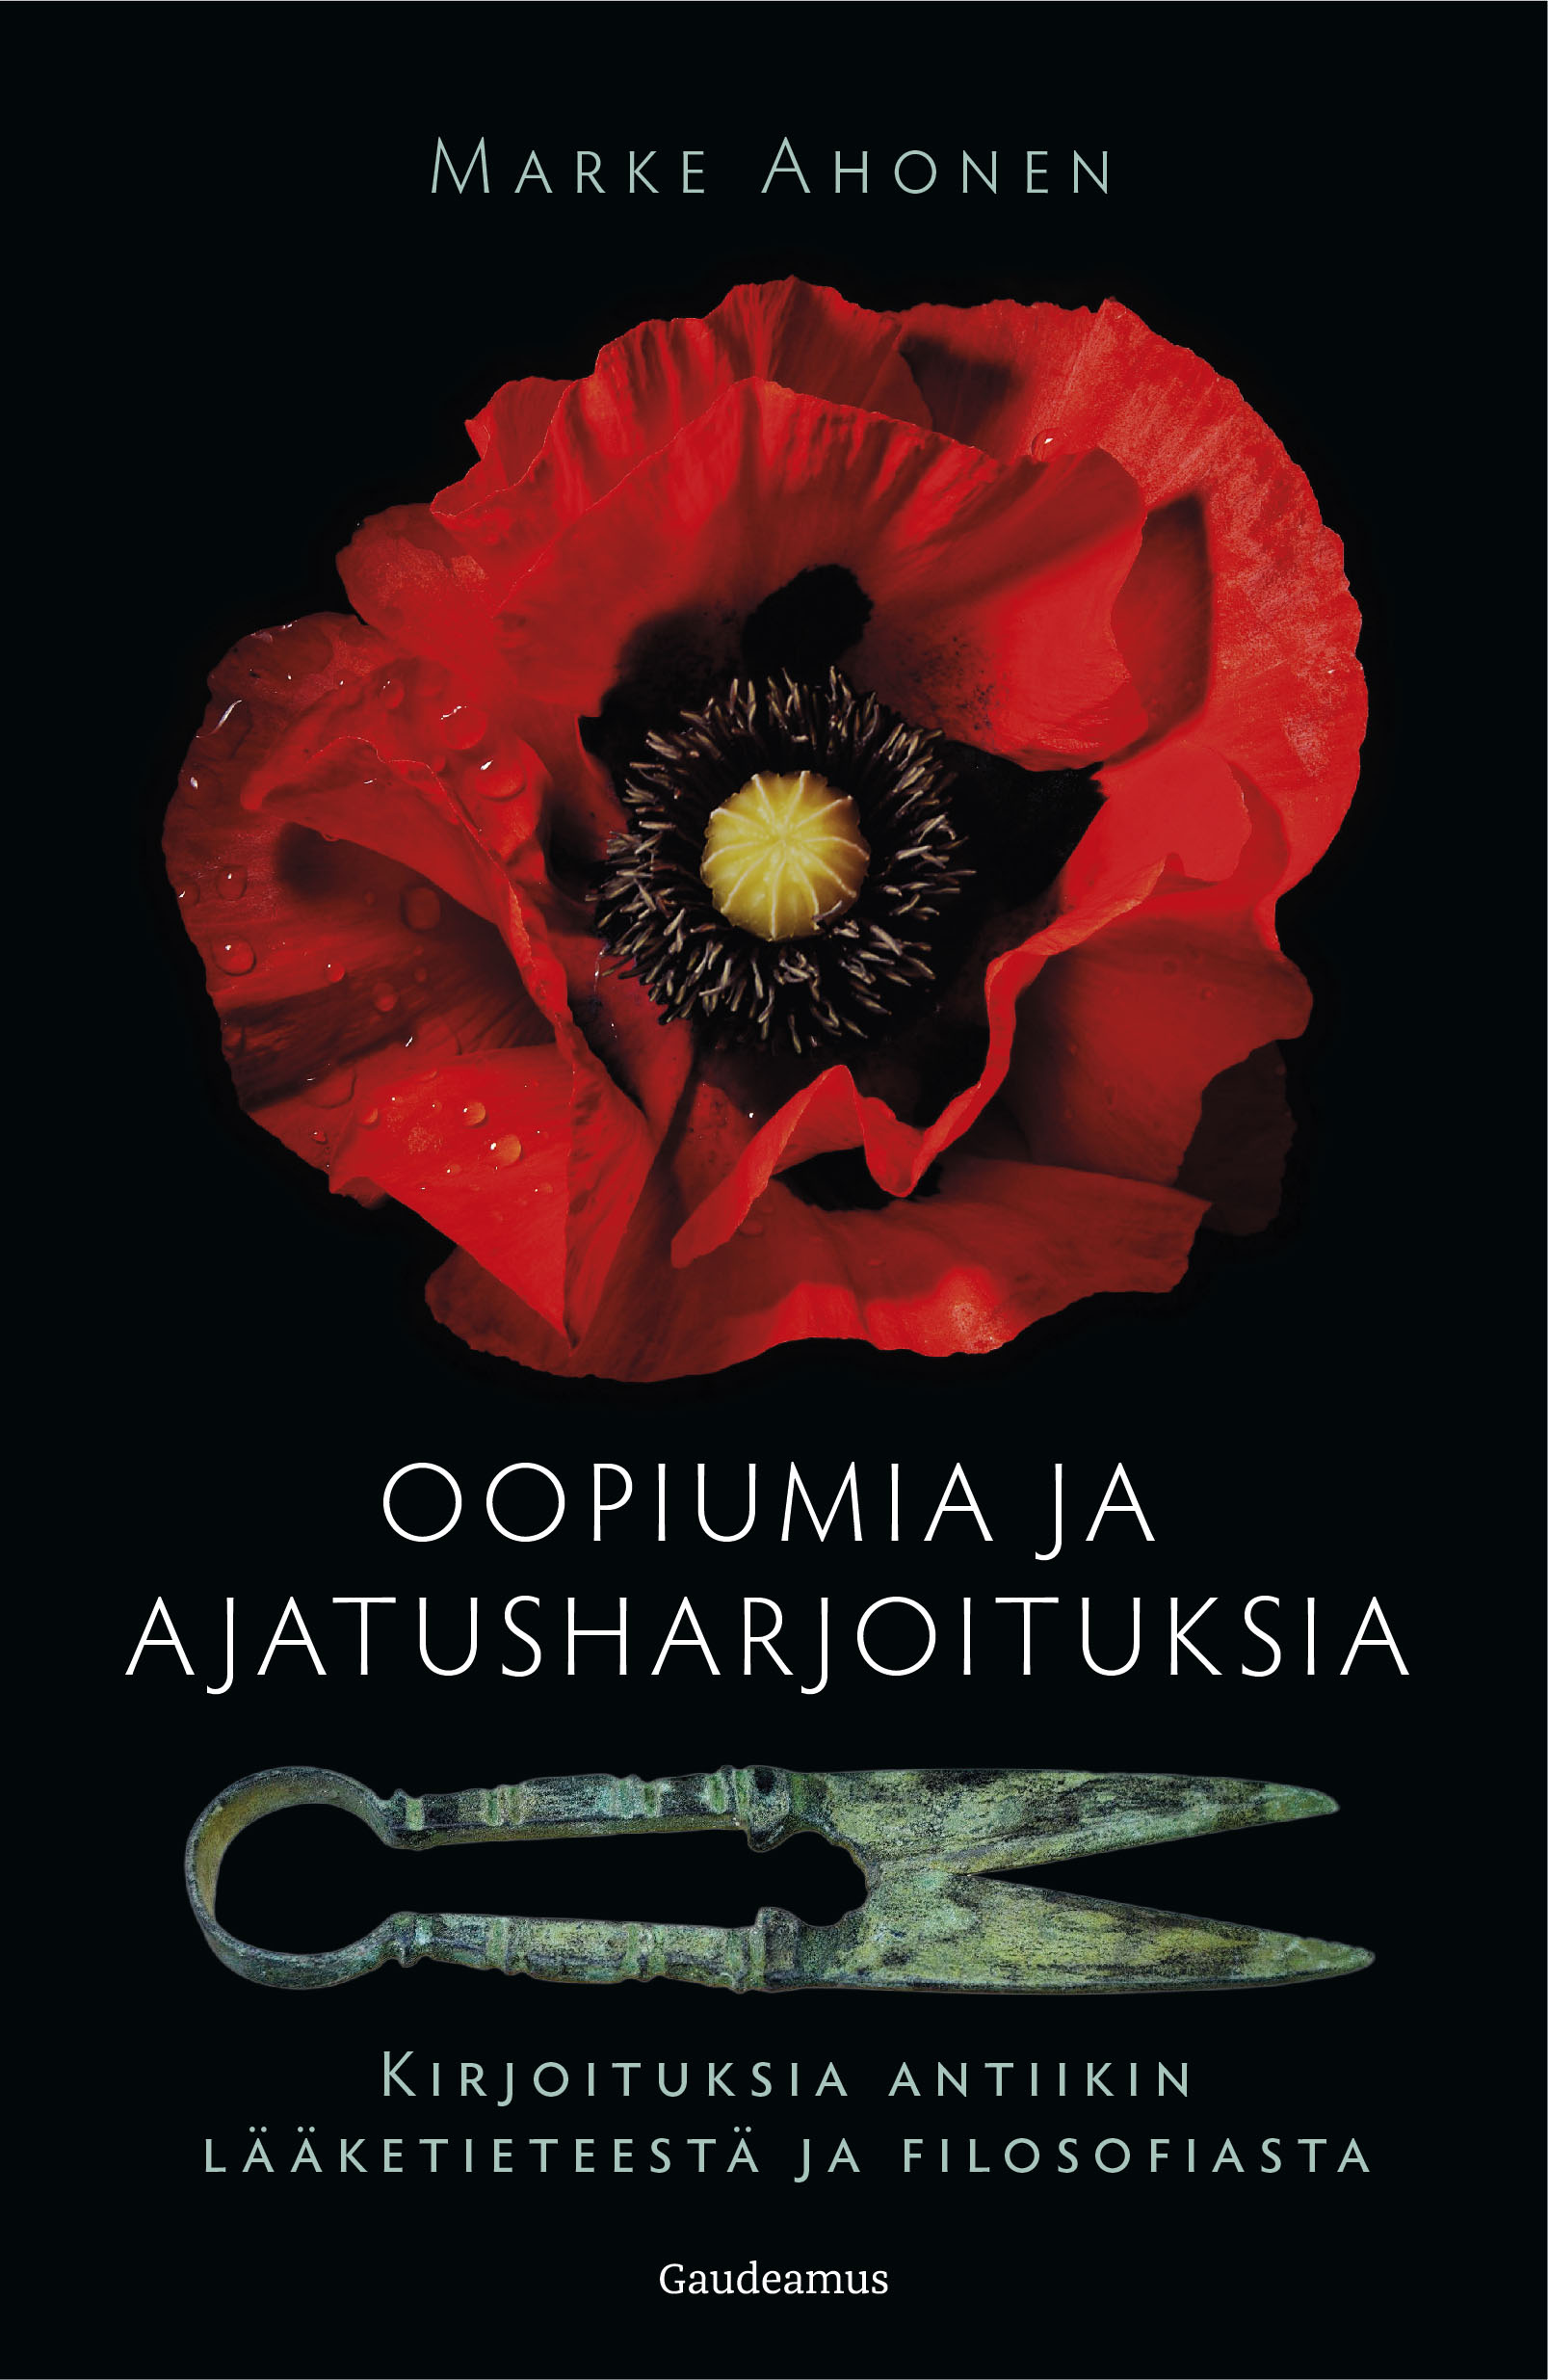 Ahonen, Marke - Oopiumia ja ajatusharjoituksia: Kirjoituksia antiikin lääketieteestä ja filosofiasta, ebook